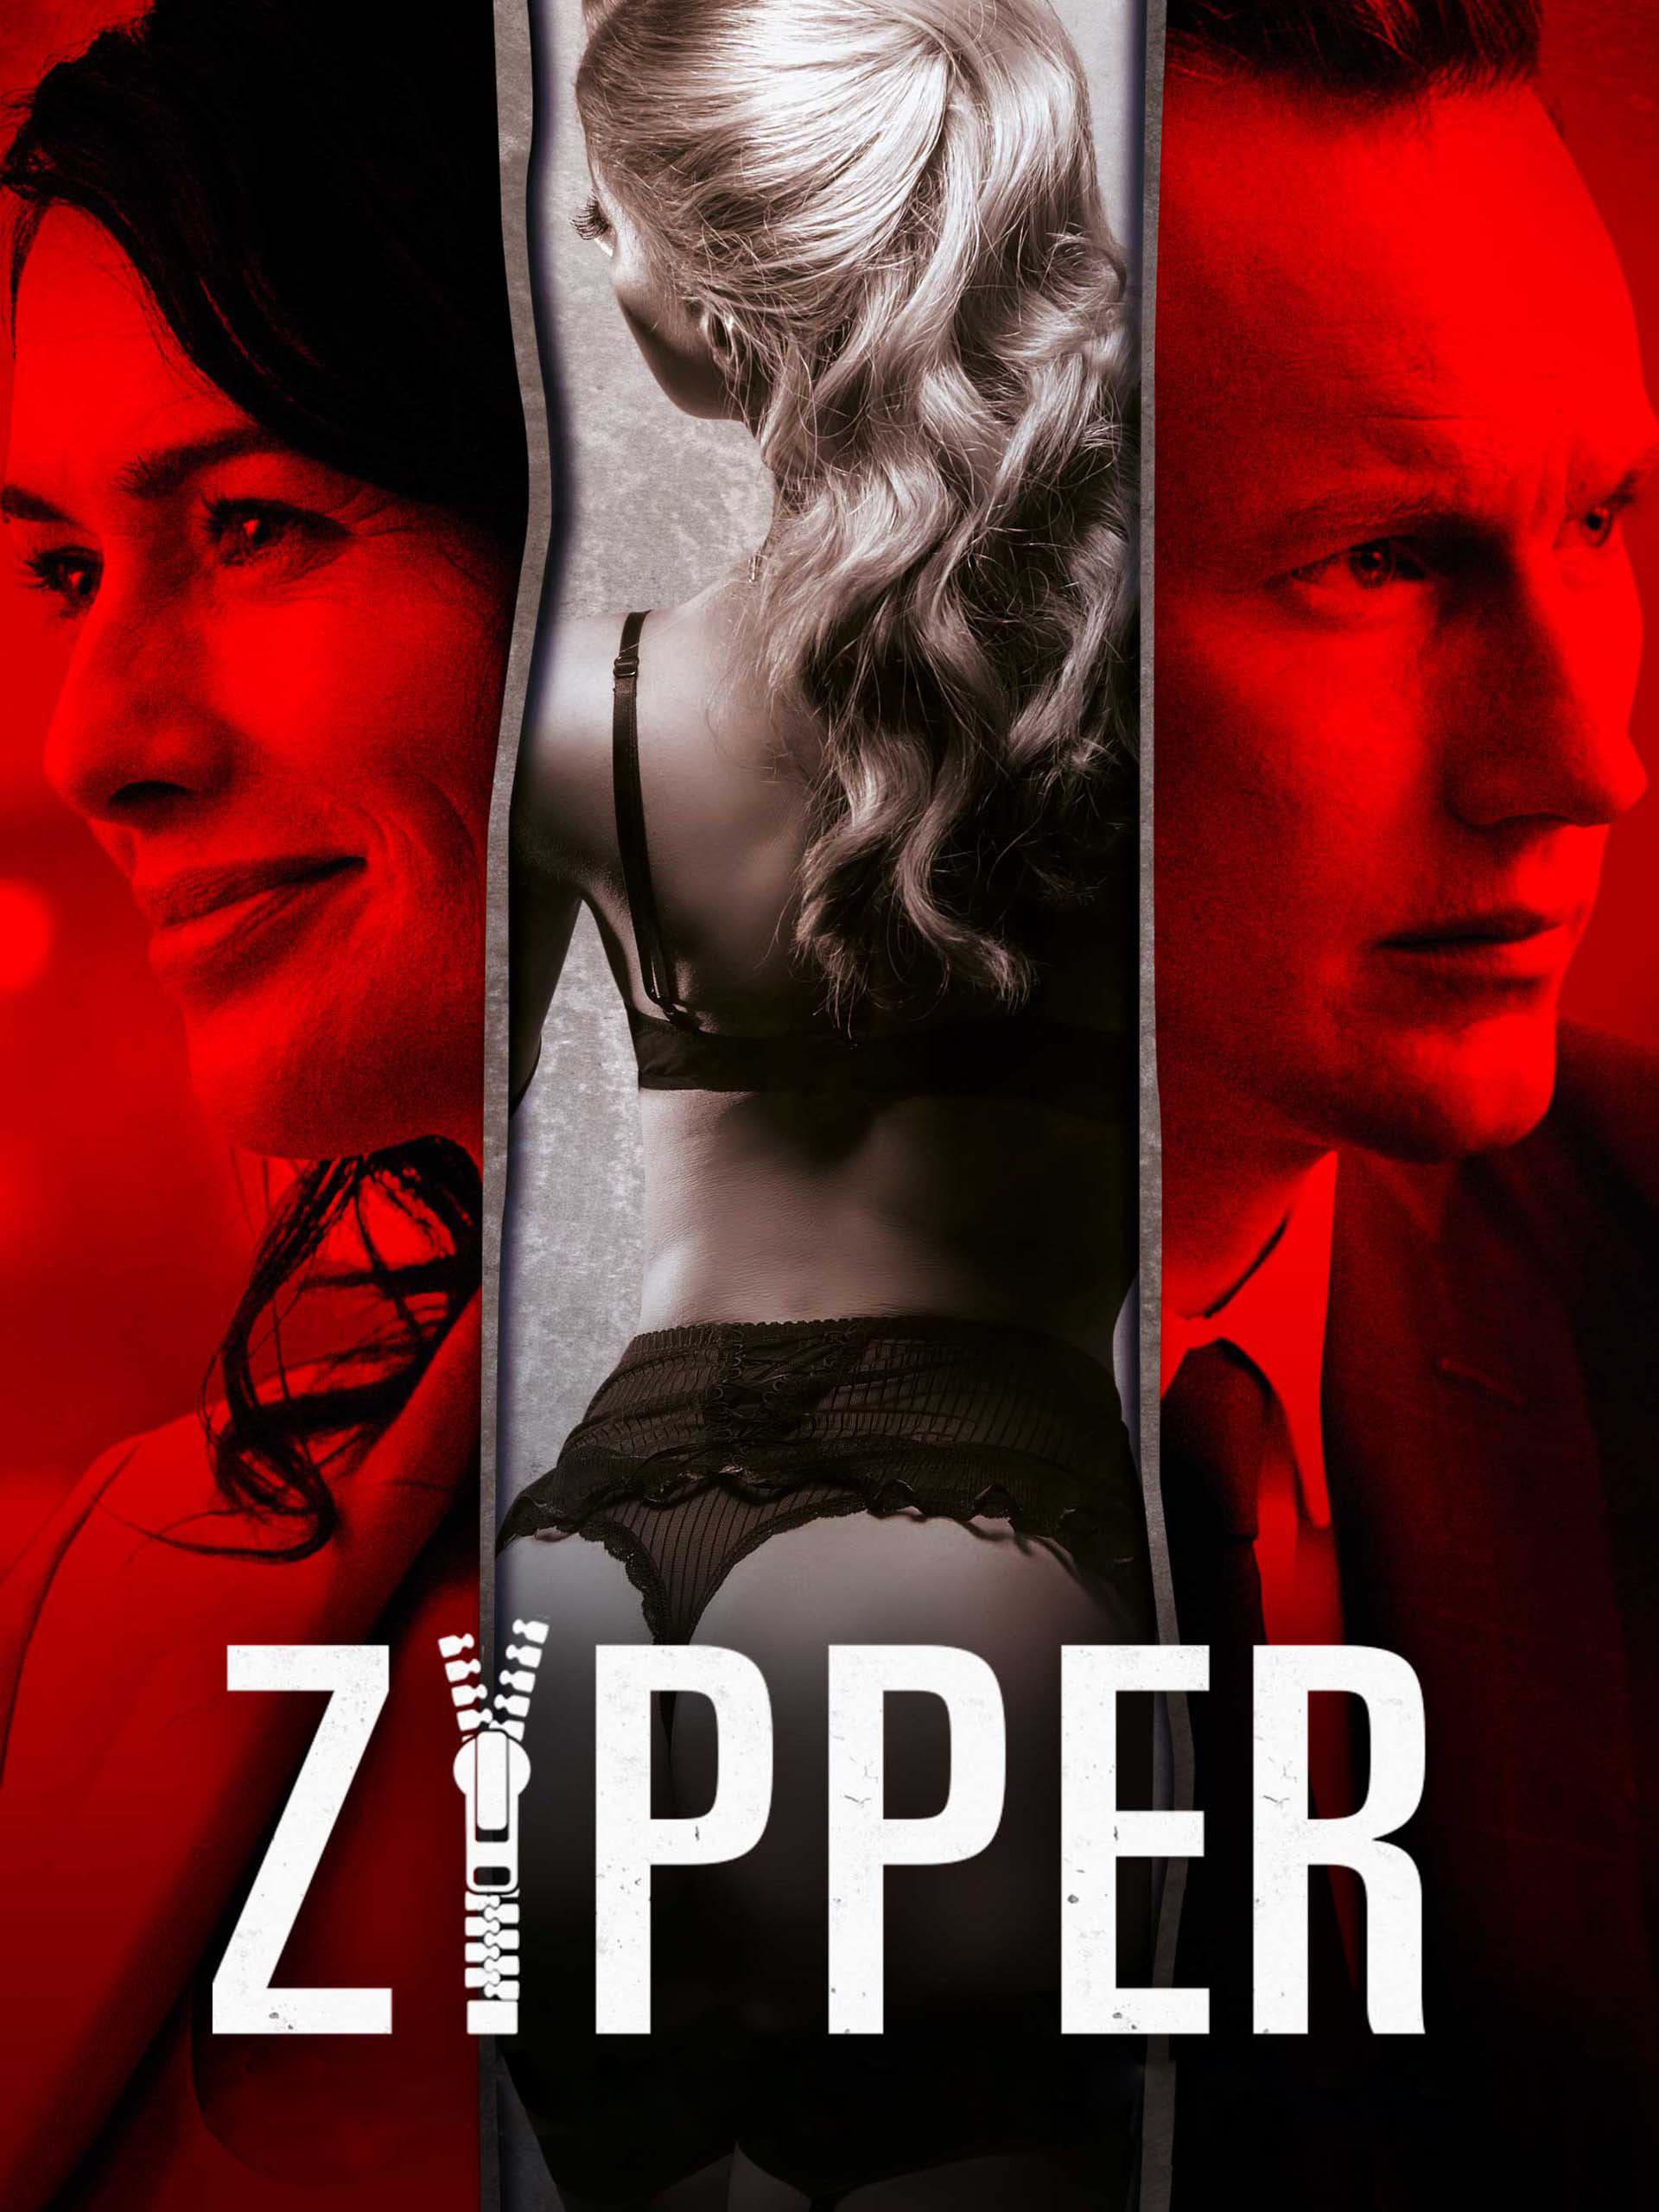 Zipper poster